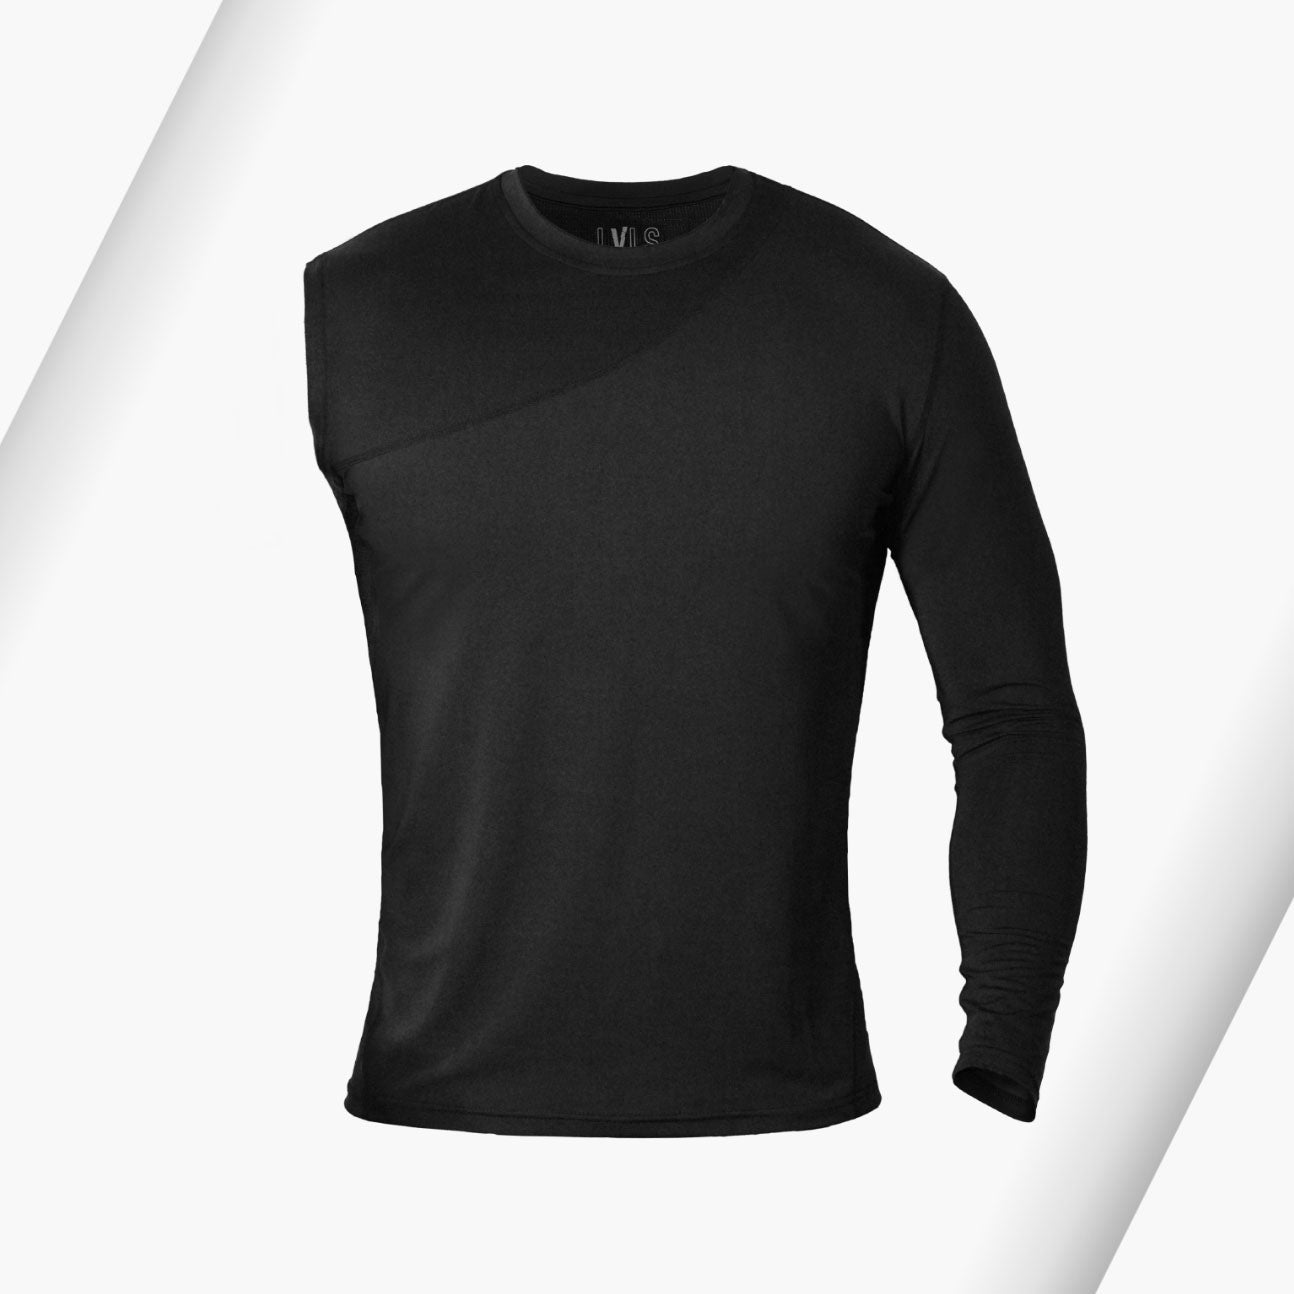 Women's Black Prism Asymmetric Cotton T-shirt - Carpatree